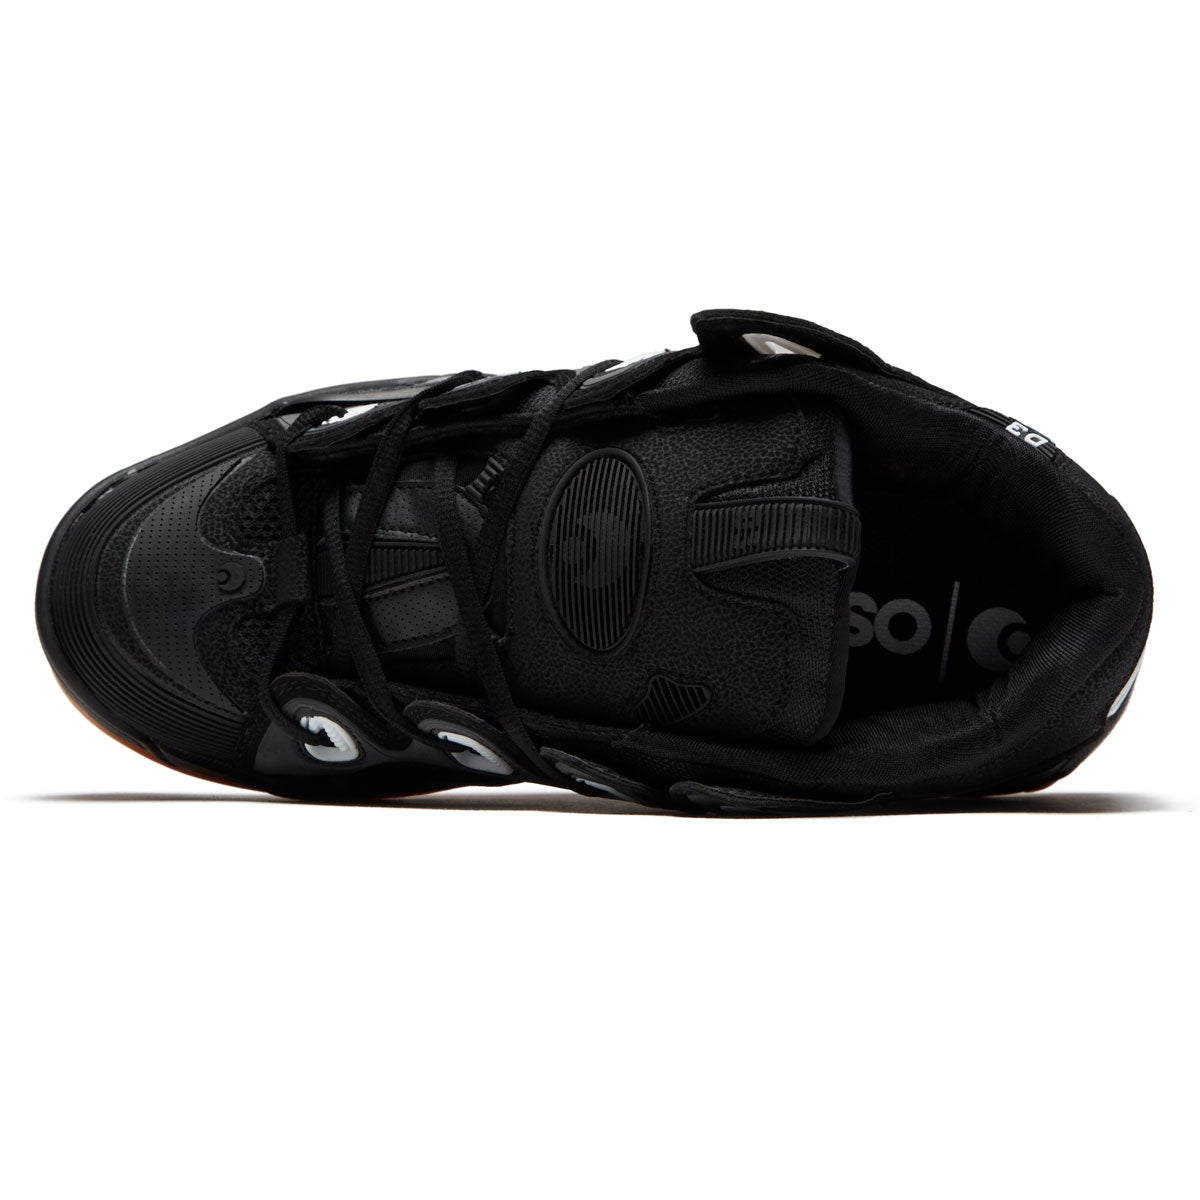 Osiris D3 2001 Shoes - Black/Gum image 3